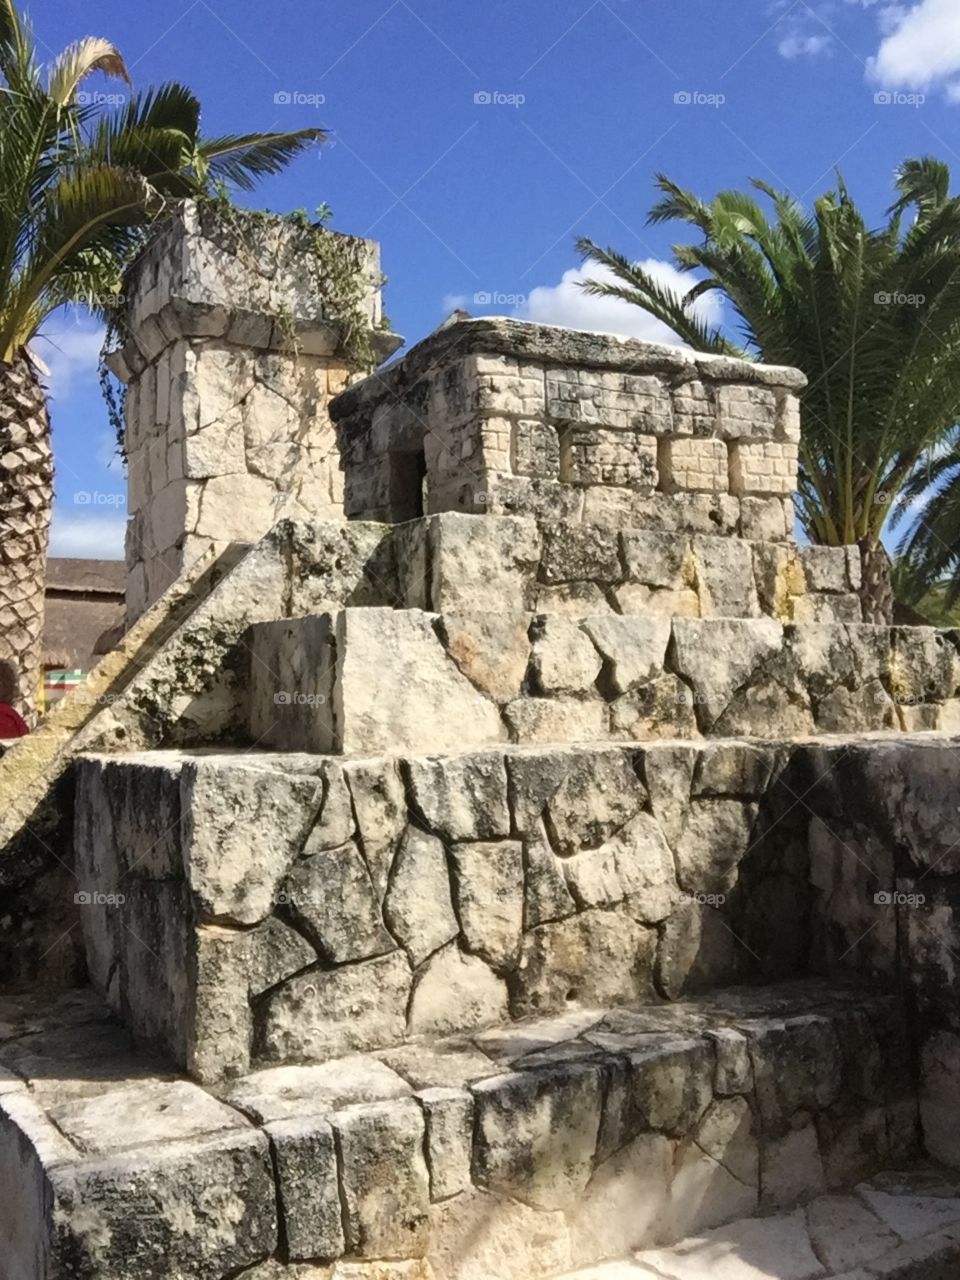 Statue in Cozumel 